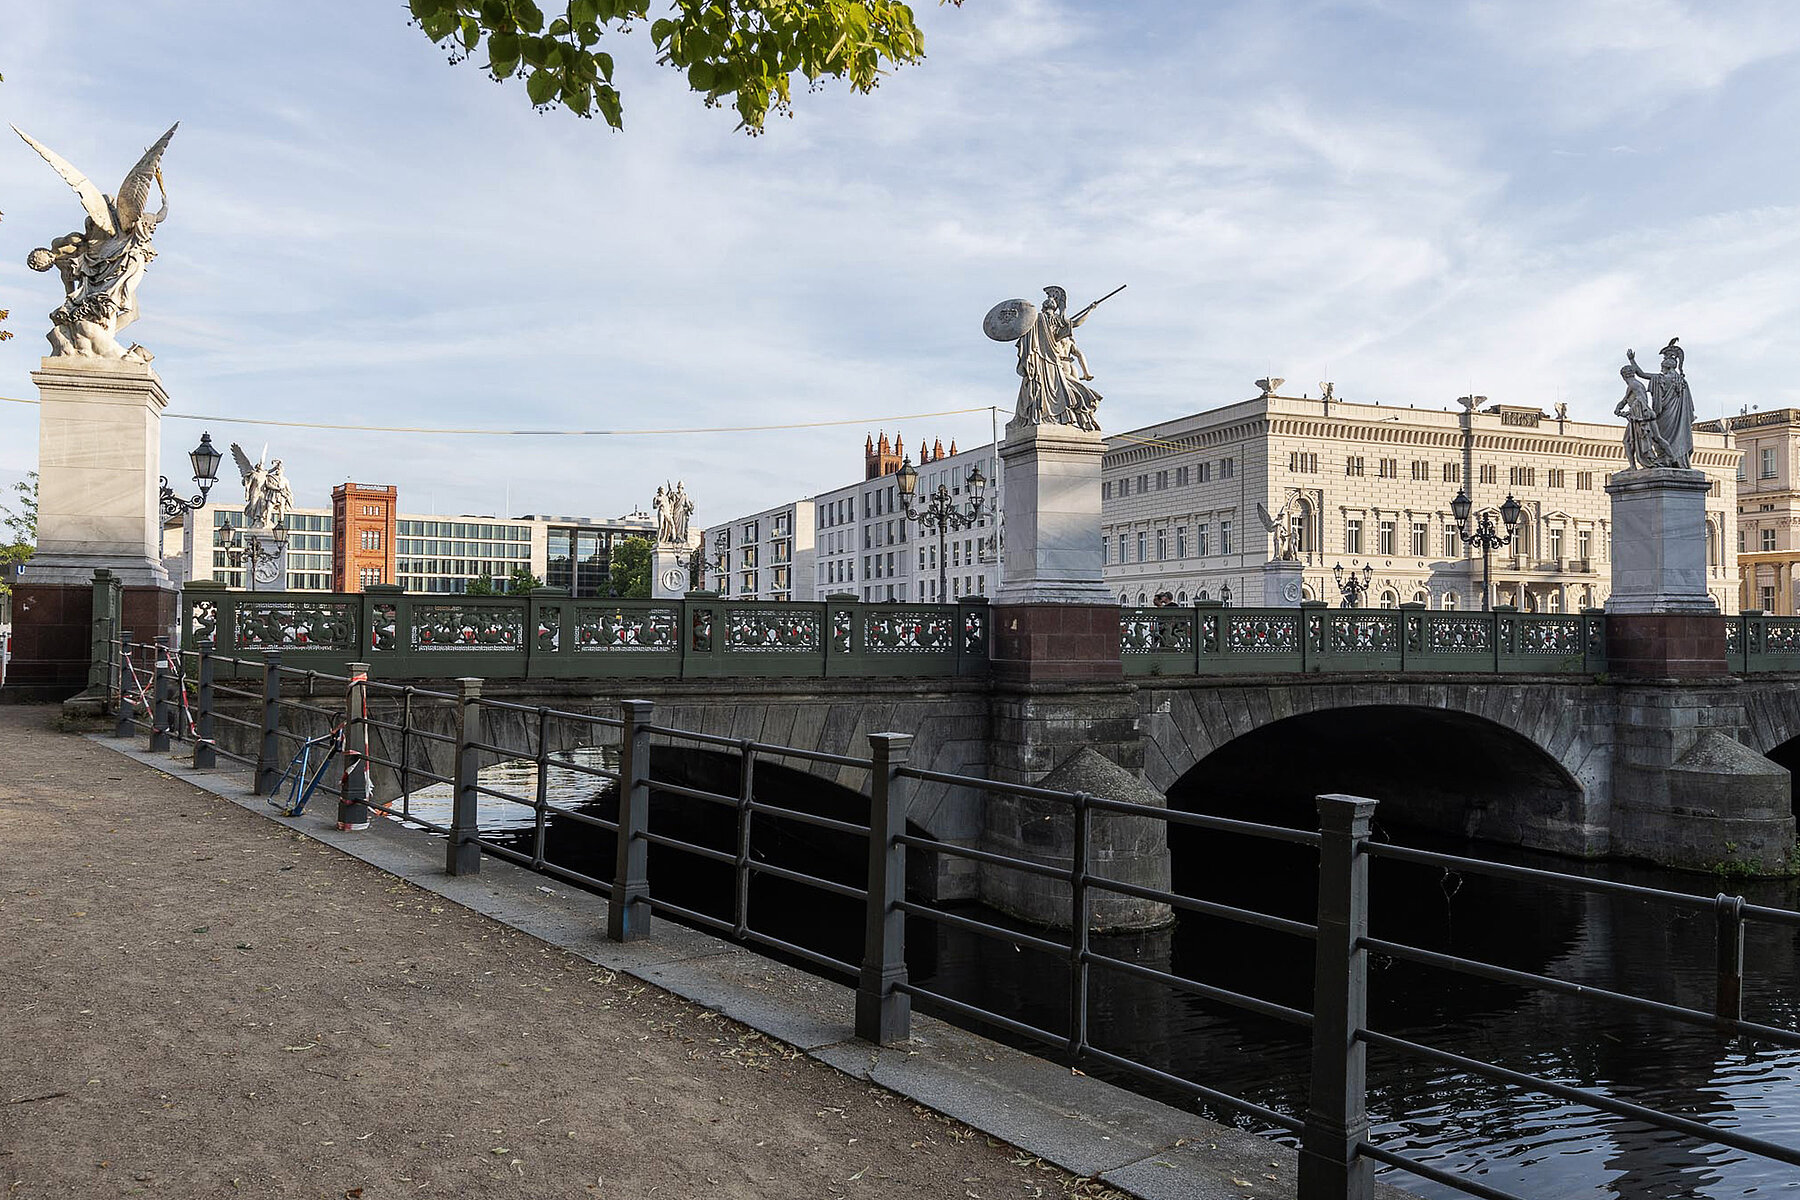 Die Schlossbrücke über der Spree mit Skulpturen von Kriegern und Siegesgöttinnen auf Sockeln. Im Hintergrund das Kommandantenhaus.